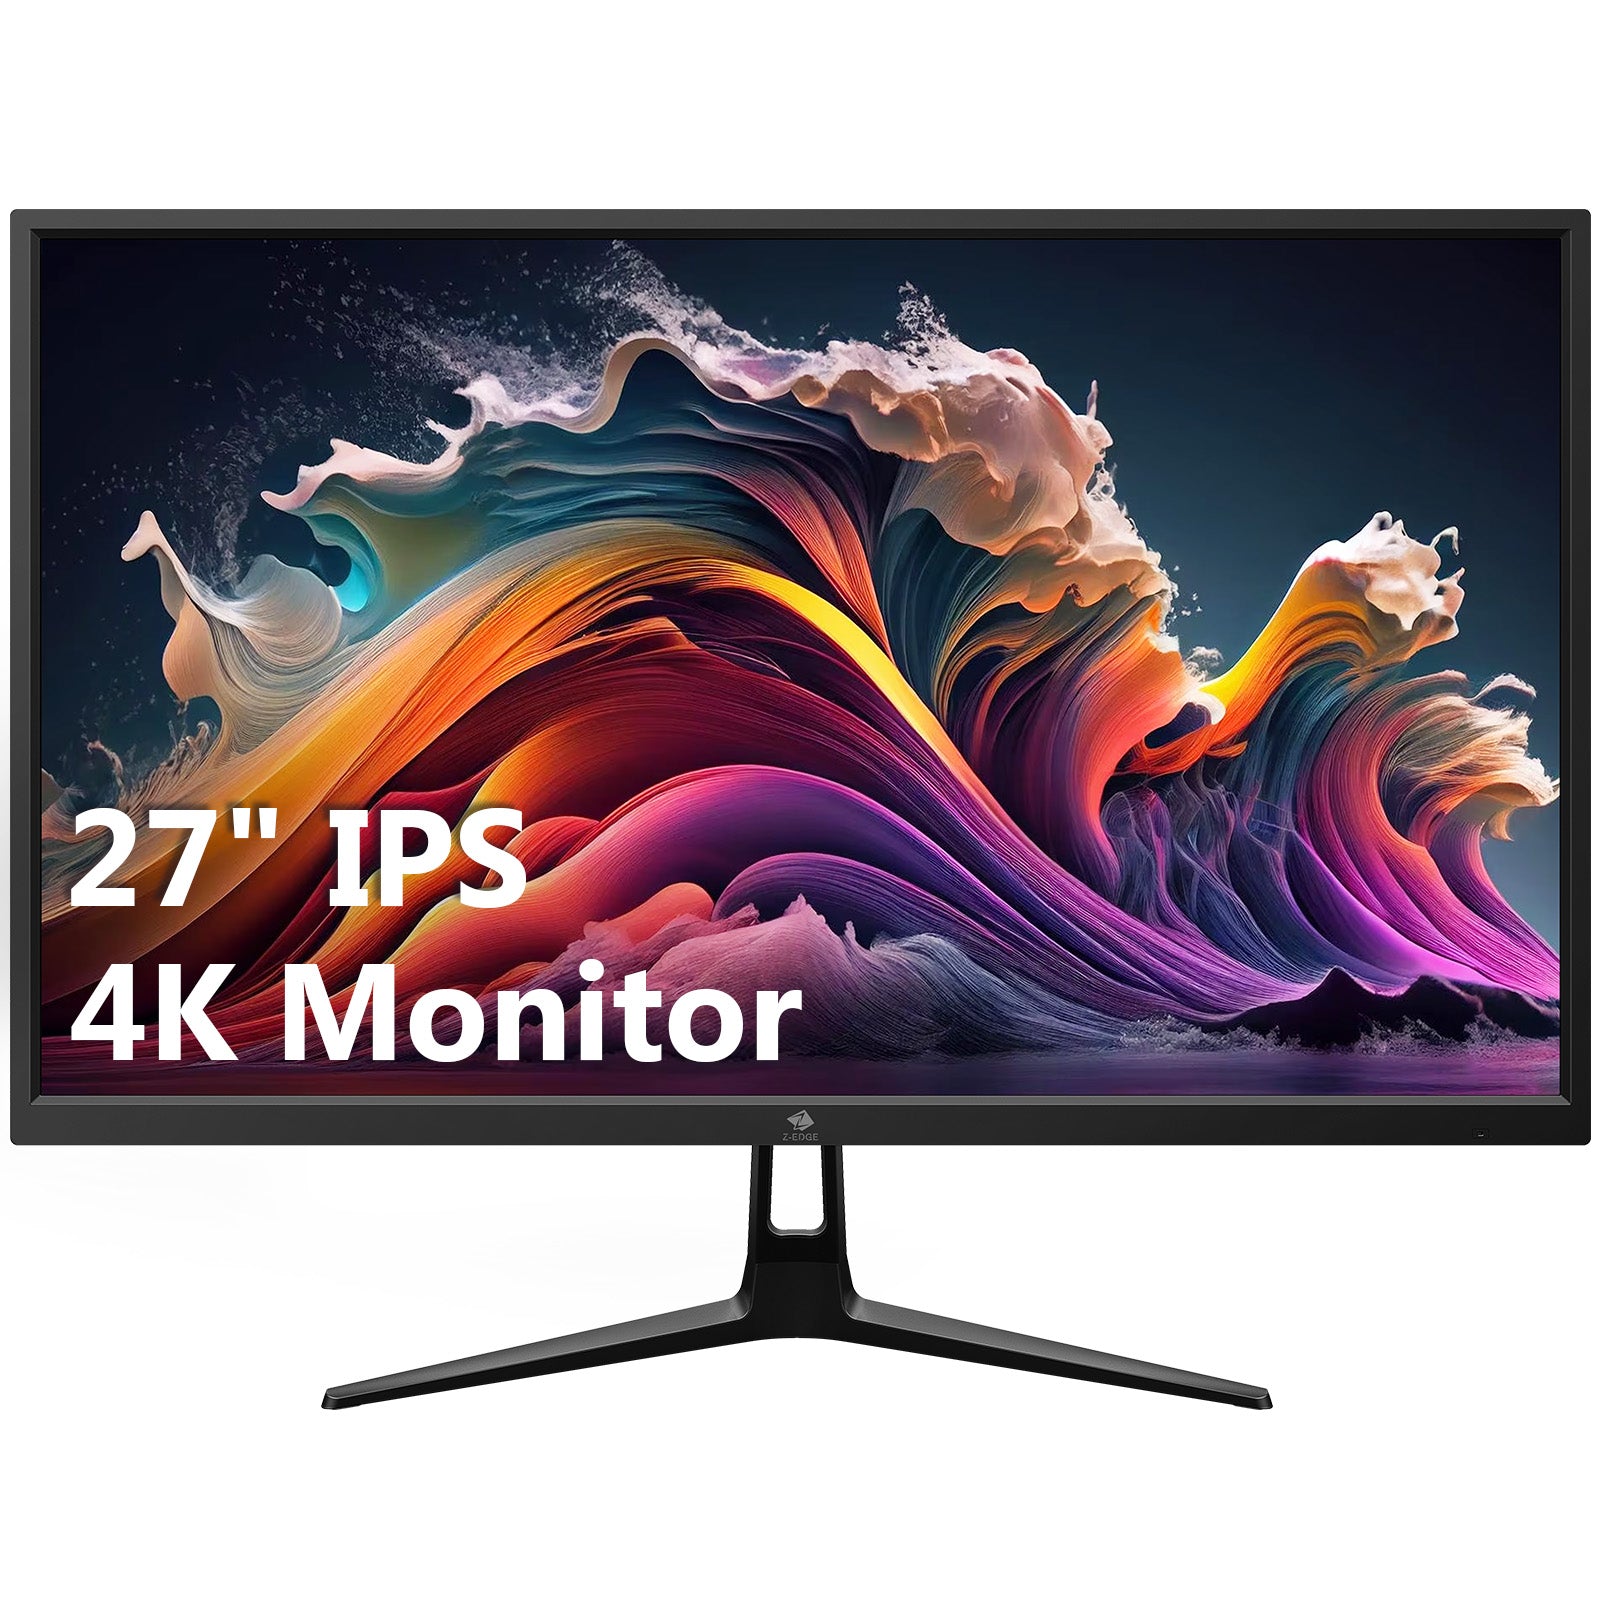 Monitor PC LED IPS 27 pulgadas